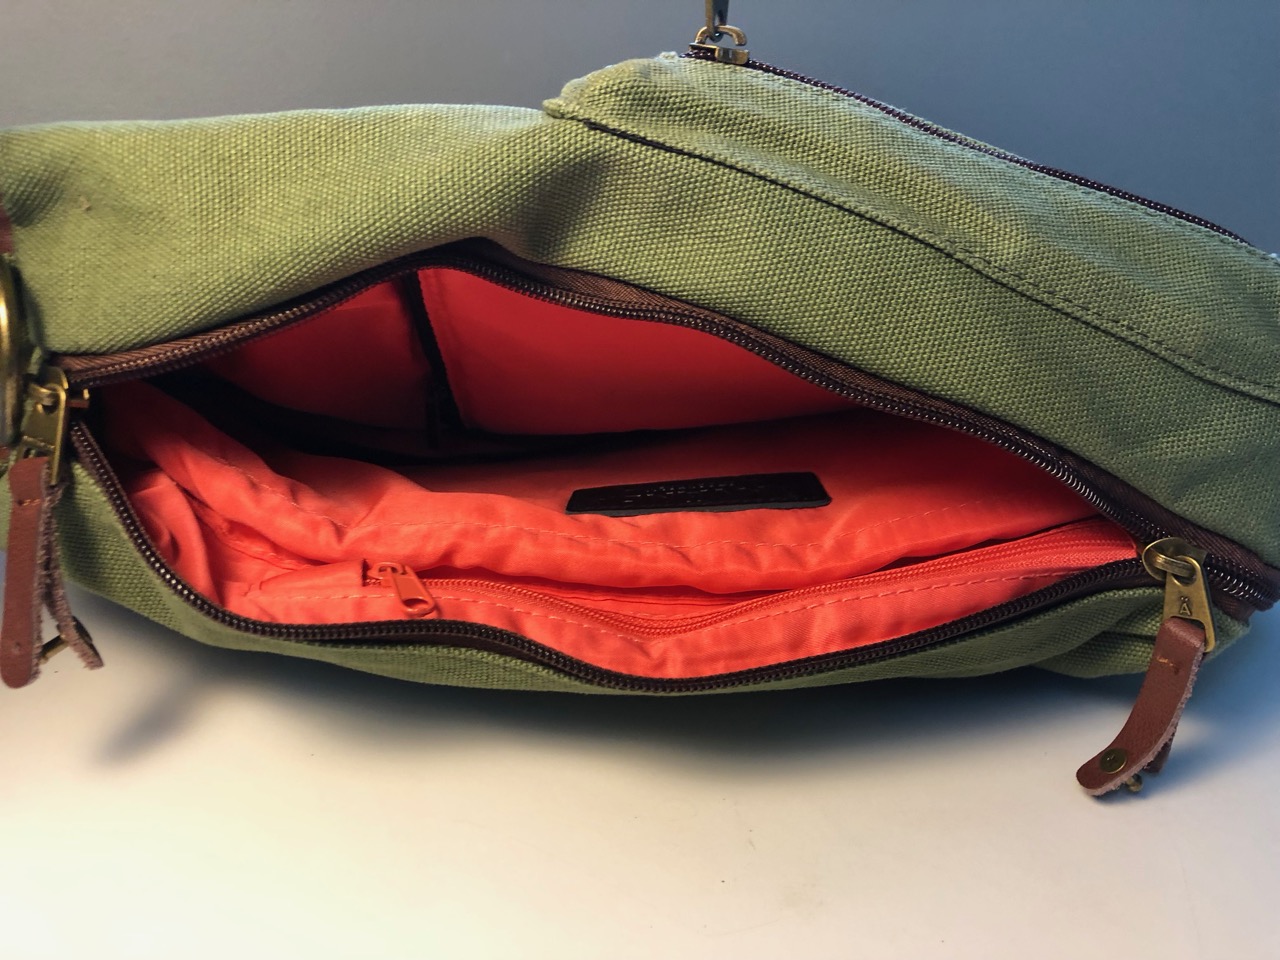 Använda. A Great F*cking Bag. by ANVÄNDA TEAM — Kickstarter